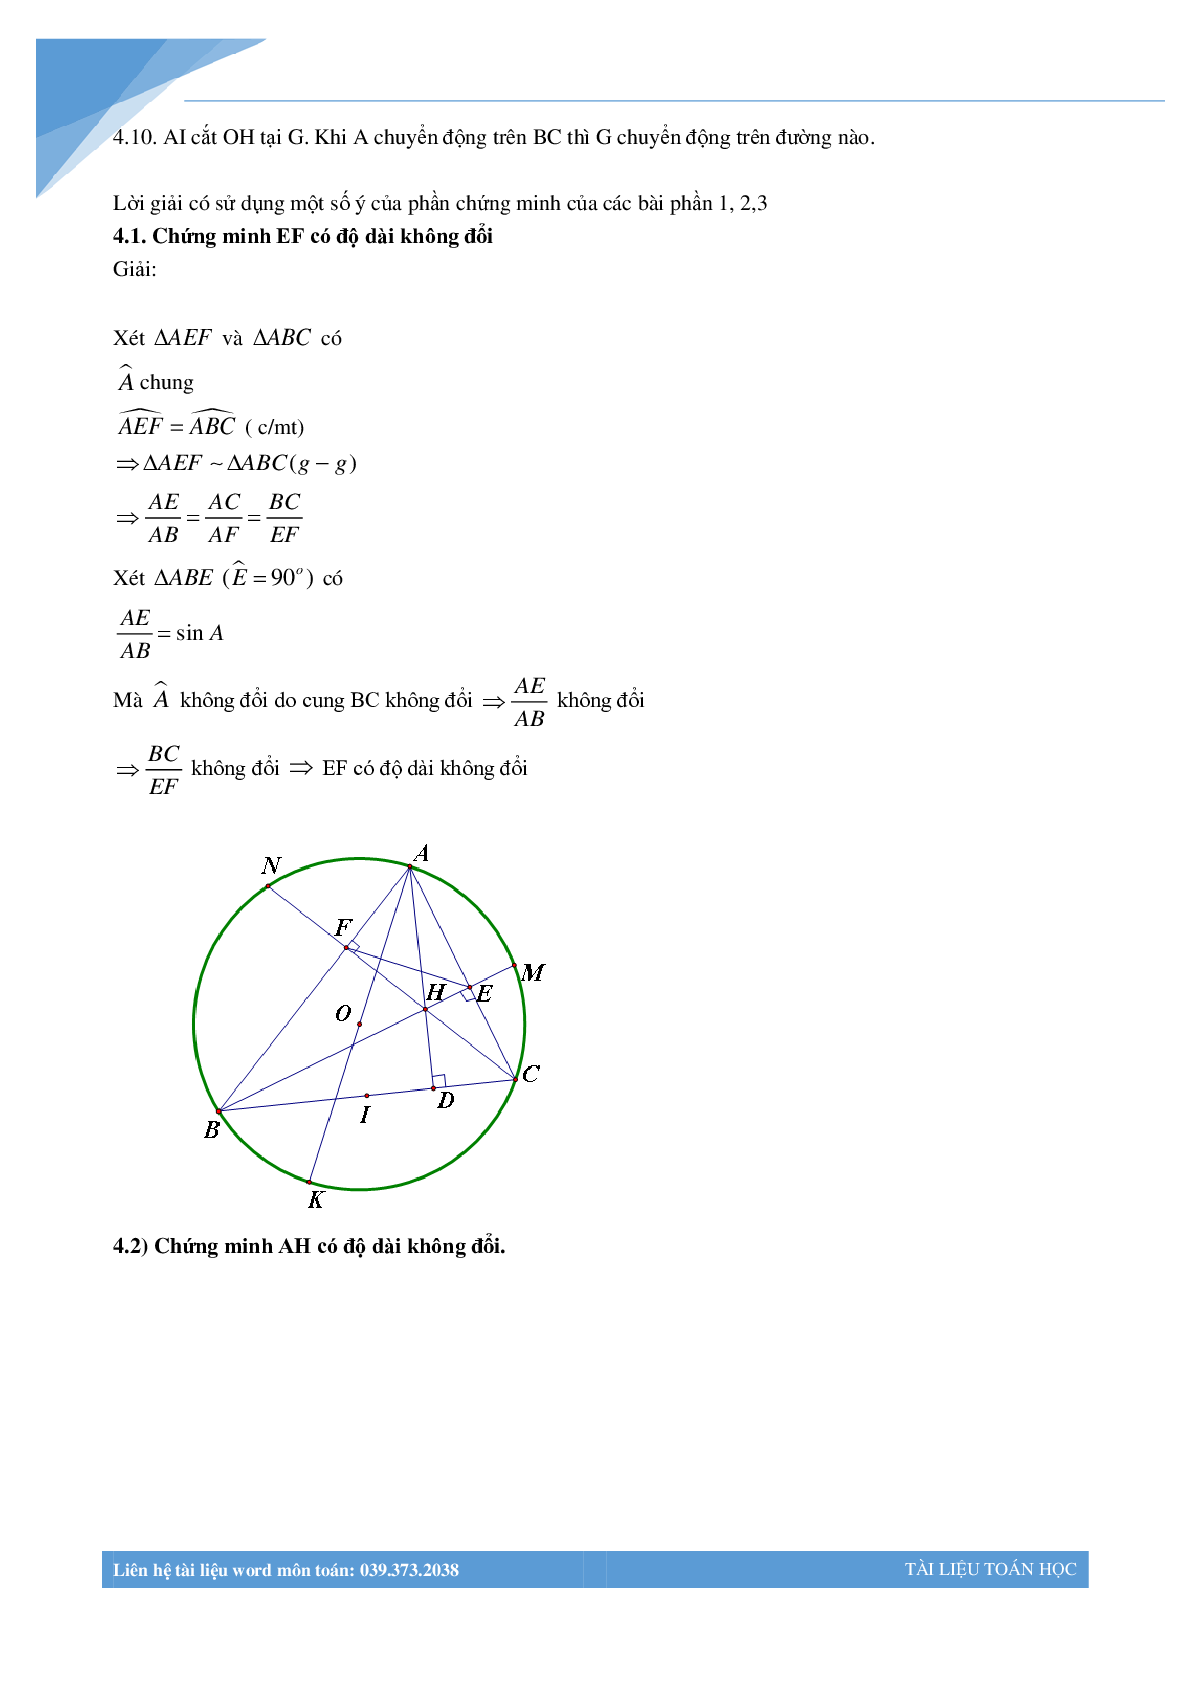 Chùm bài toán hình học luyện thi vào lớp 10 (trang 7)